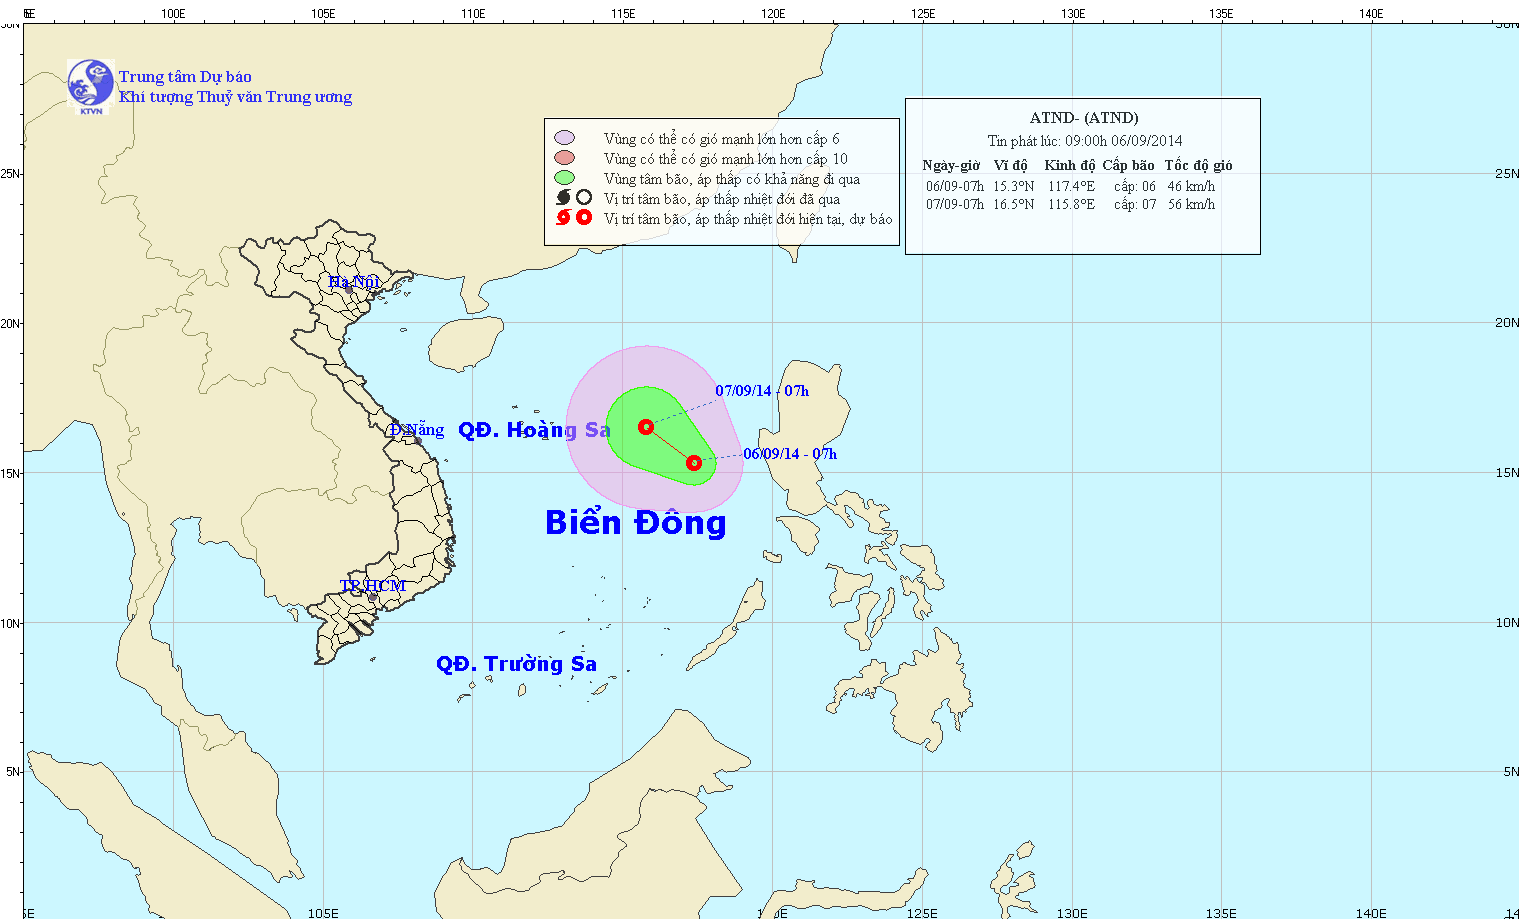 Áp thấp nhiệt đới trên biển Đông lúc 05h00 ngày 07/9/2014